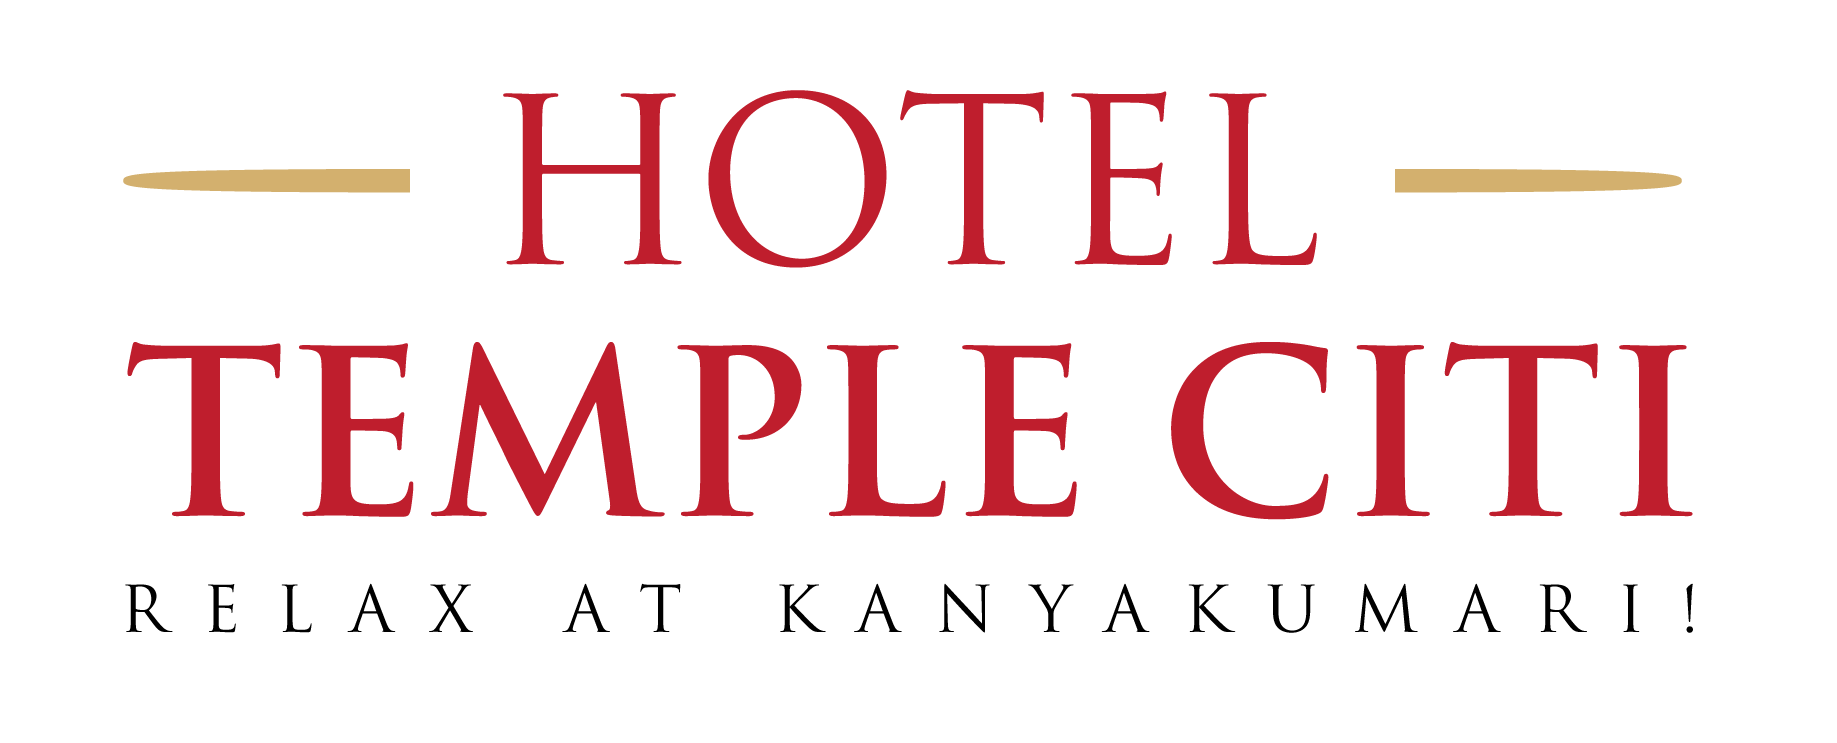 Exploring the hotels in kanyakumari